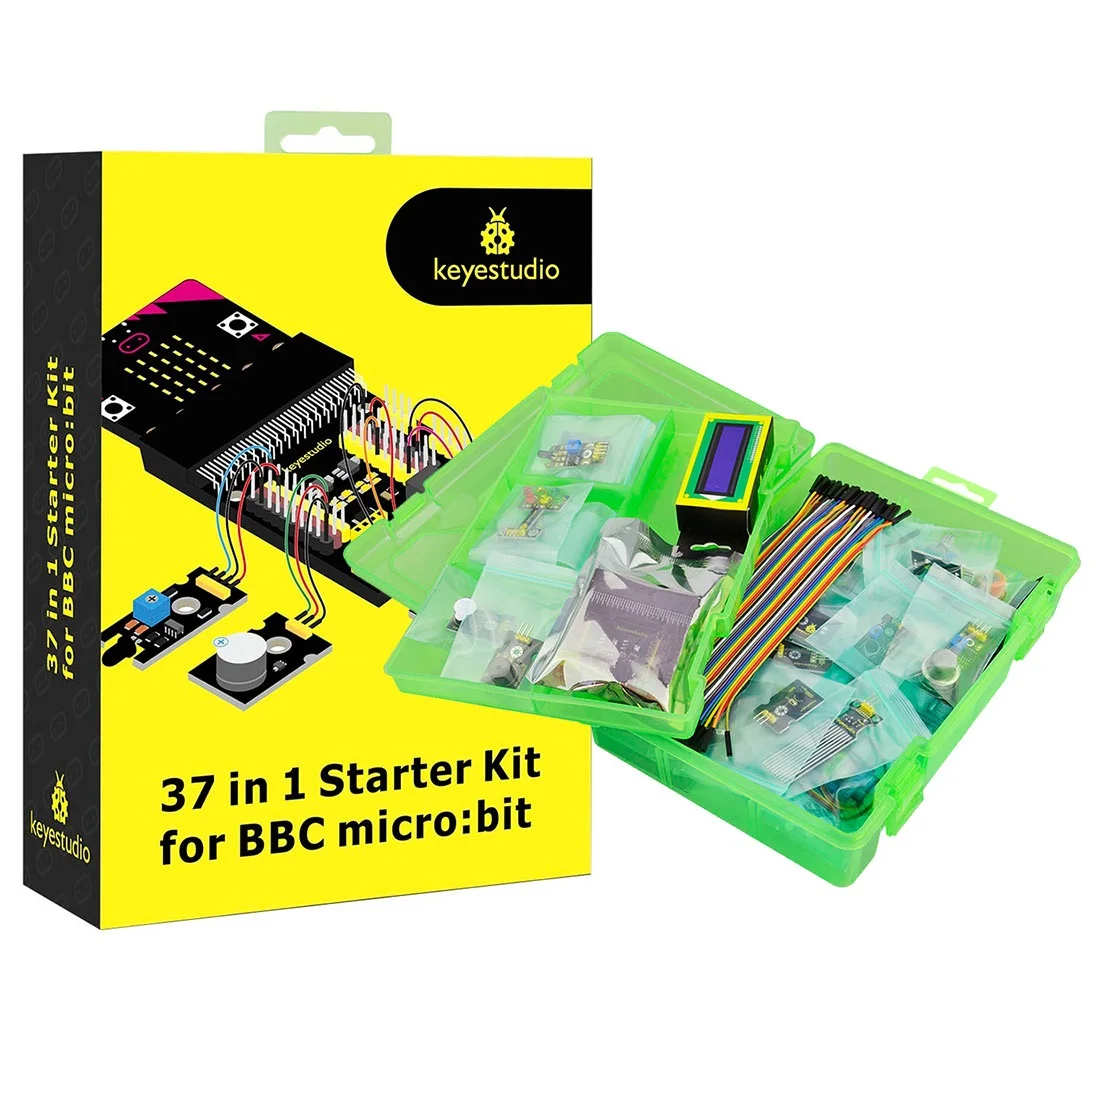 keyestudio-kit-de-sensor-de-microbits-37-en-1-kit-de-inicio-para-bbc-micro-bit-v2-kit-de-aprendizaje-con-placa-micro-bit-v20